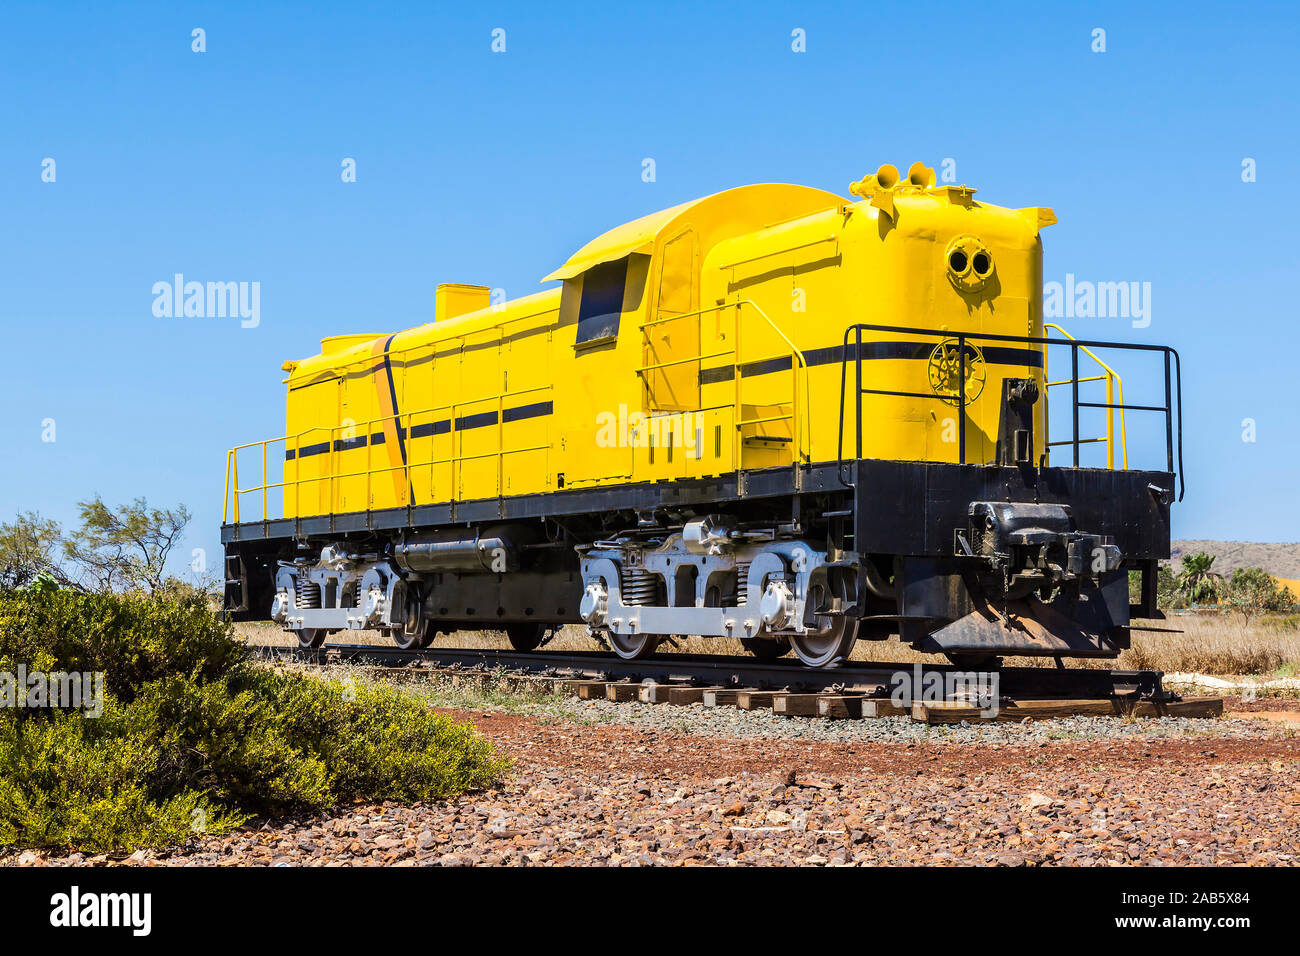 Ein gelber Zug in Australien Stock Photo